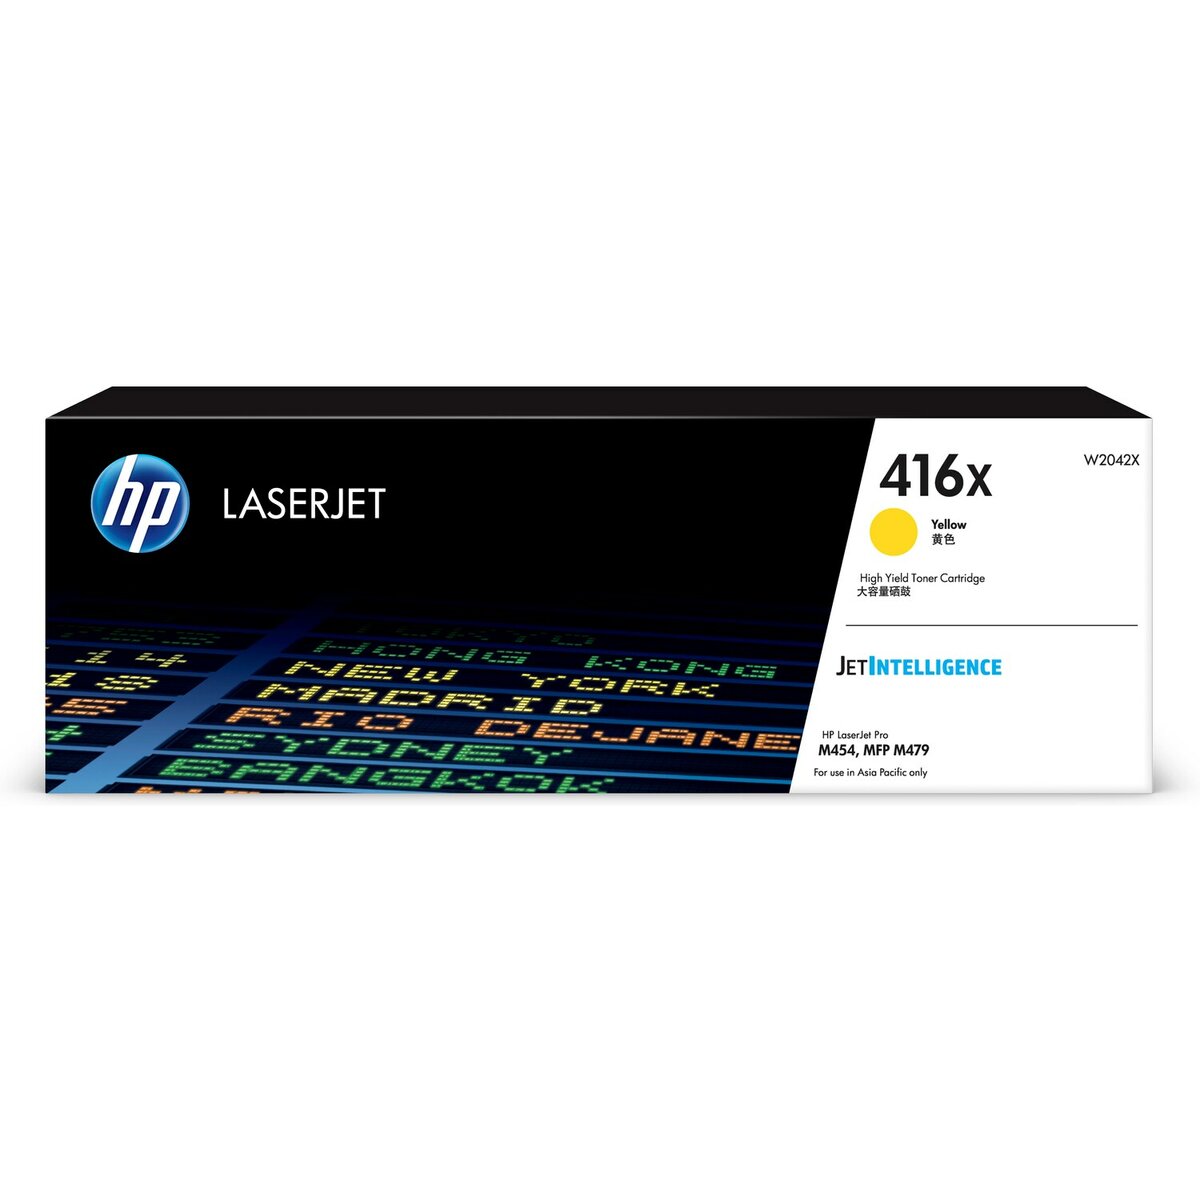 【最高3000點回饋 滿額折400】 HP 416X 黃色原廠 LaserJet 高容量碳粉匣(W2042X) For HP LaserJet M454 / M479